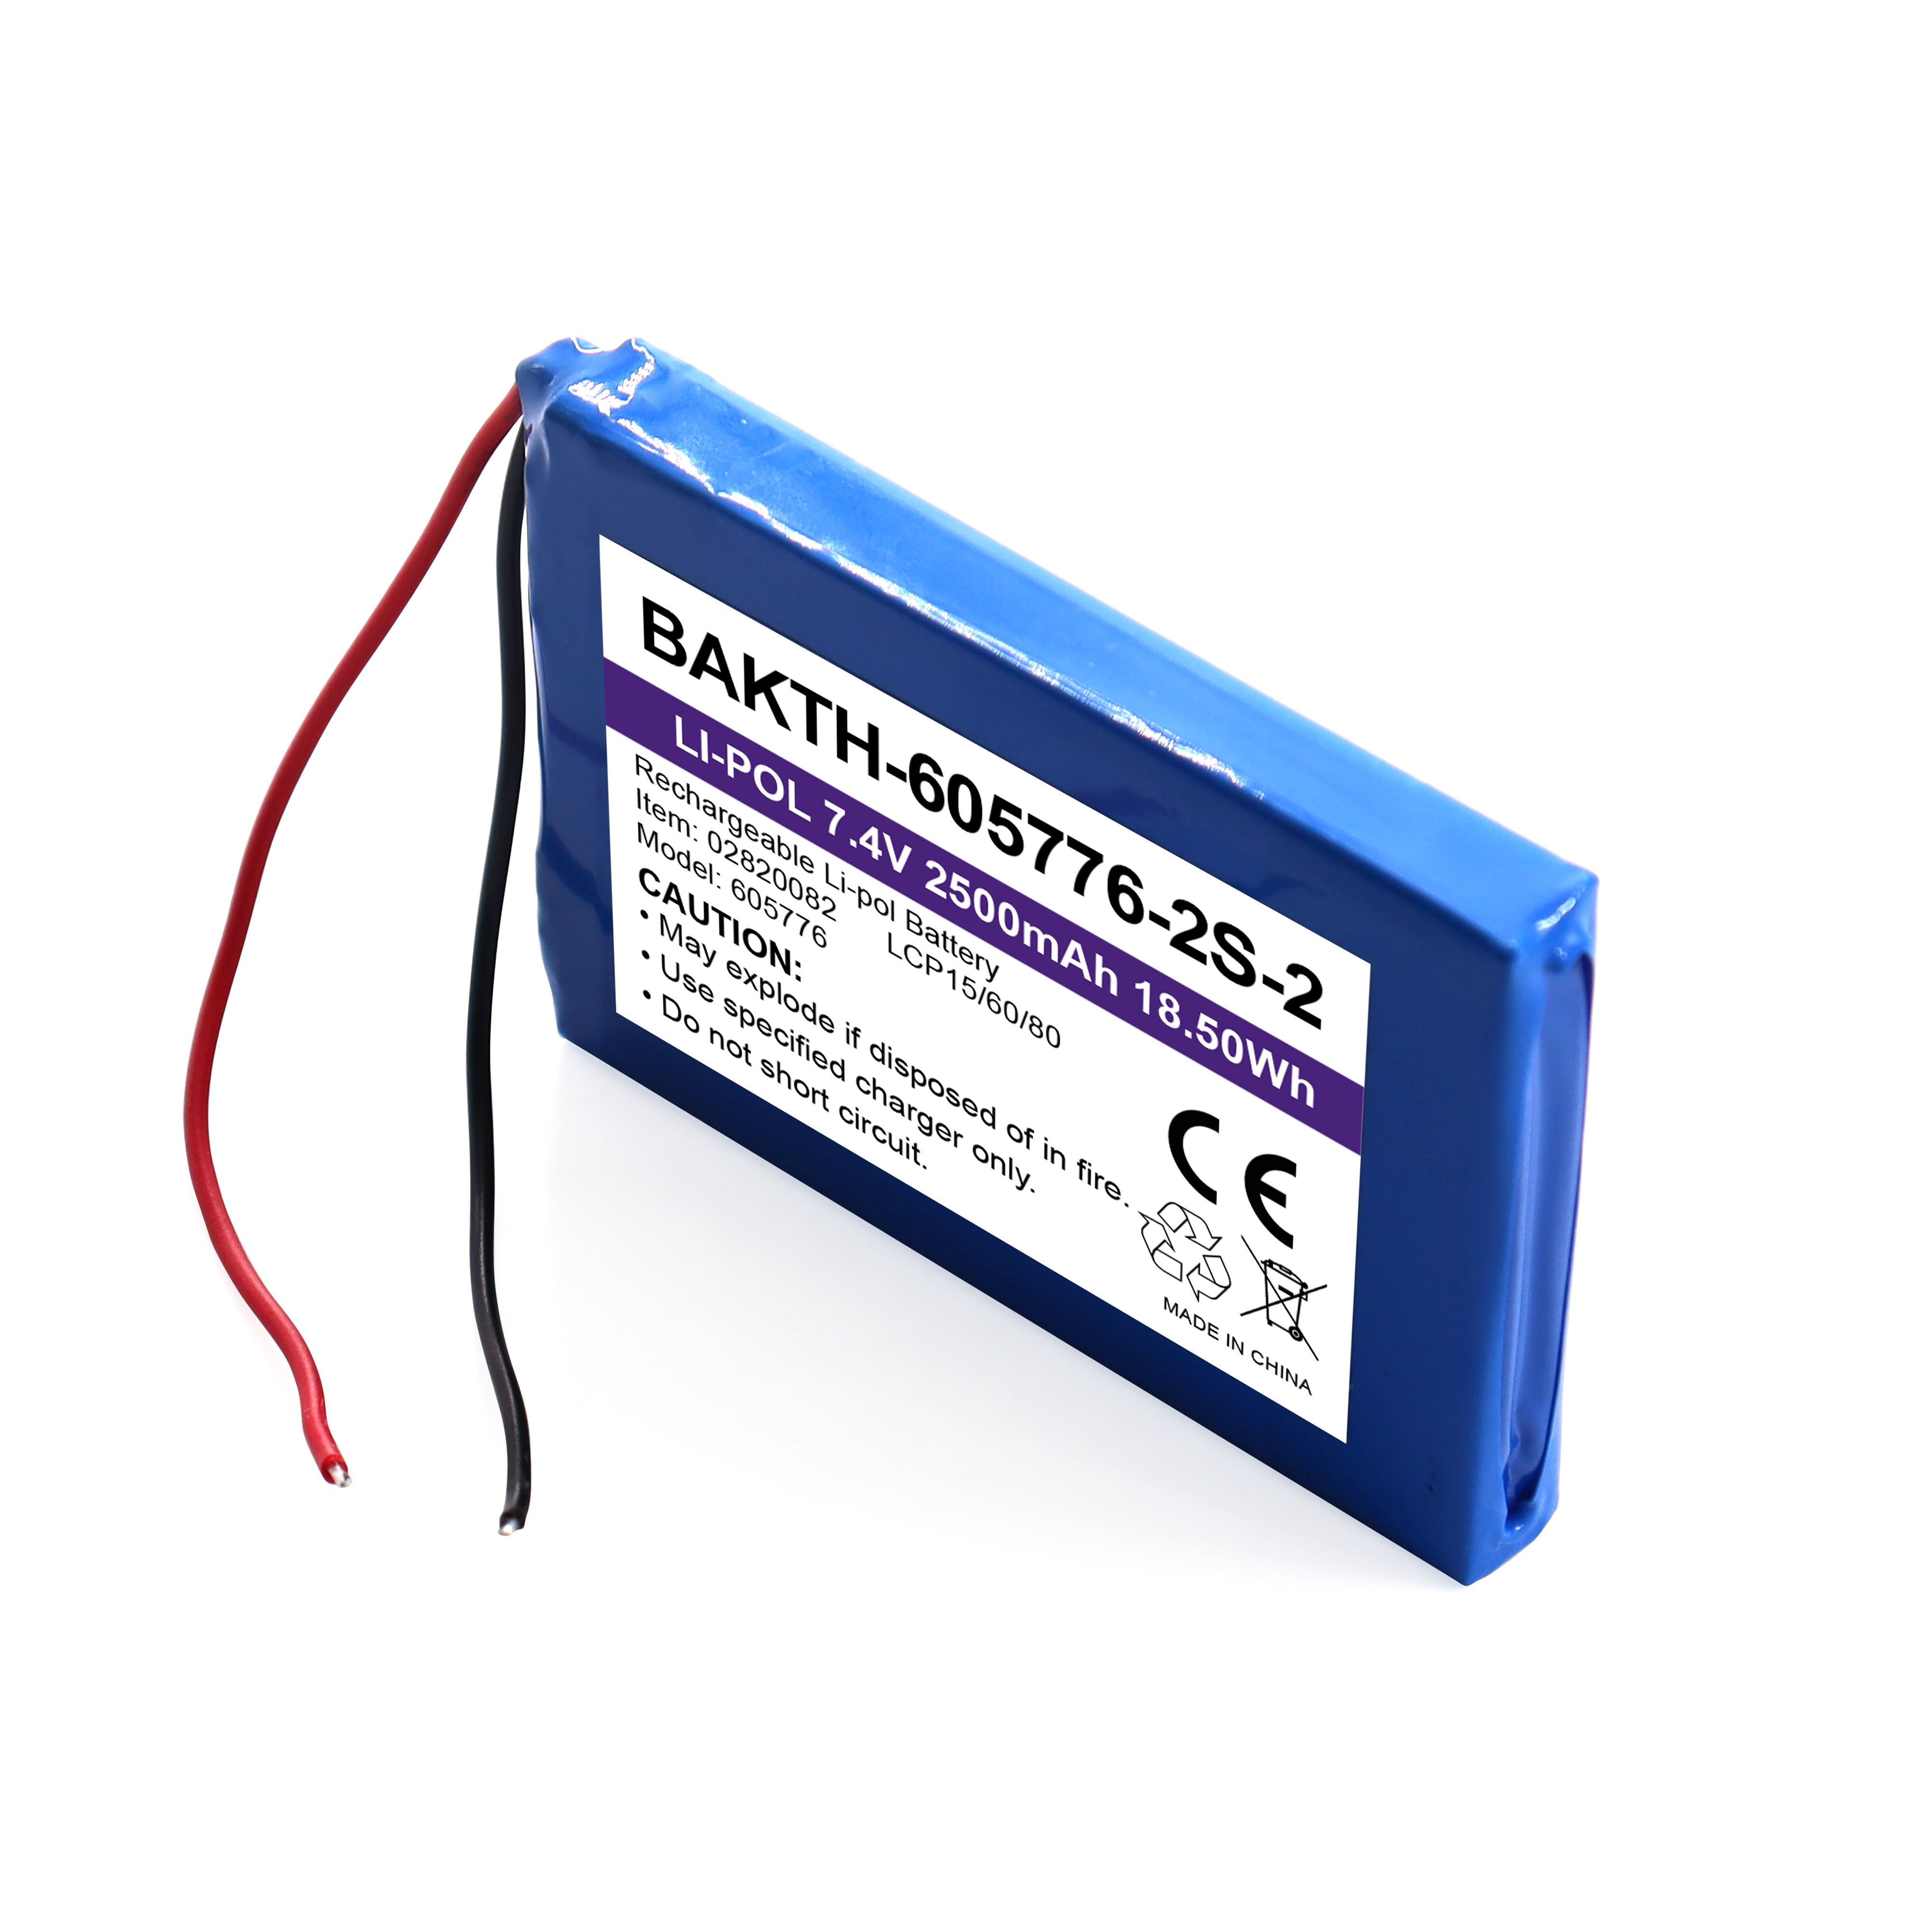 Bakth-605776P-2S-2 wiederaufladbar 7,4 V 2500mAh Lithium Polymer Batteriepack Customized Battery Austauschpaket